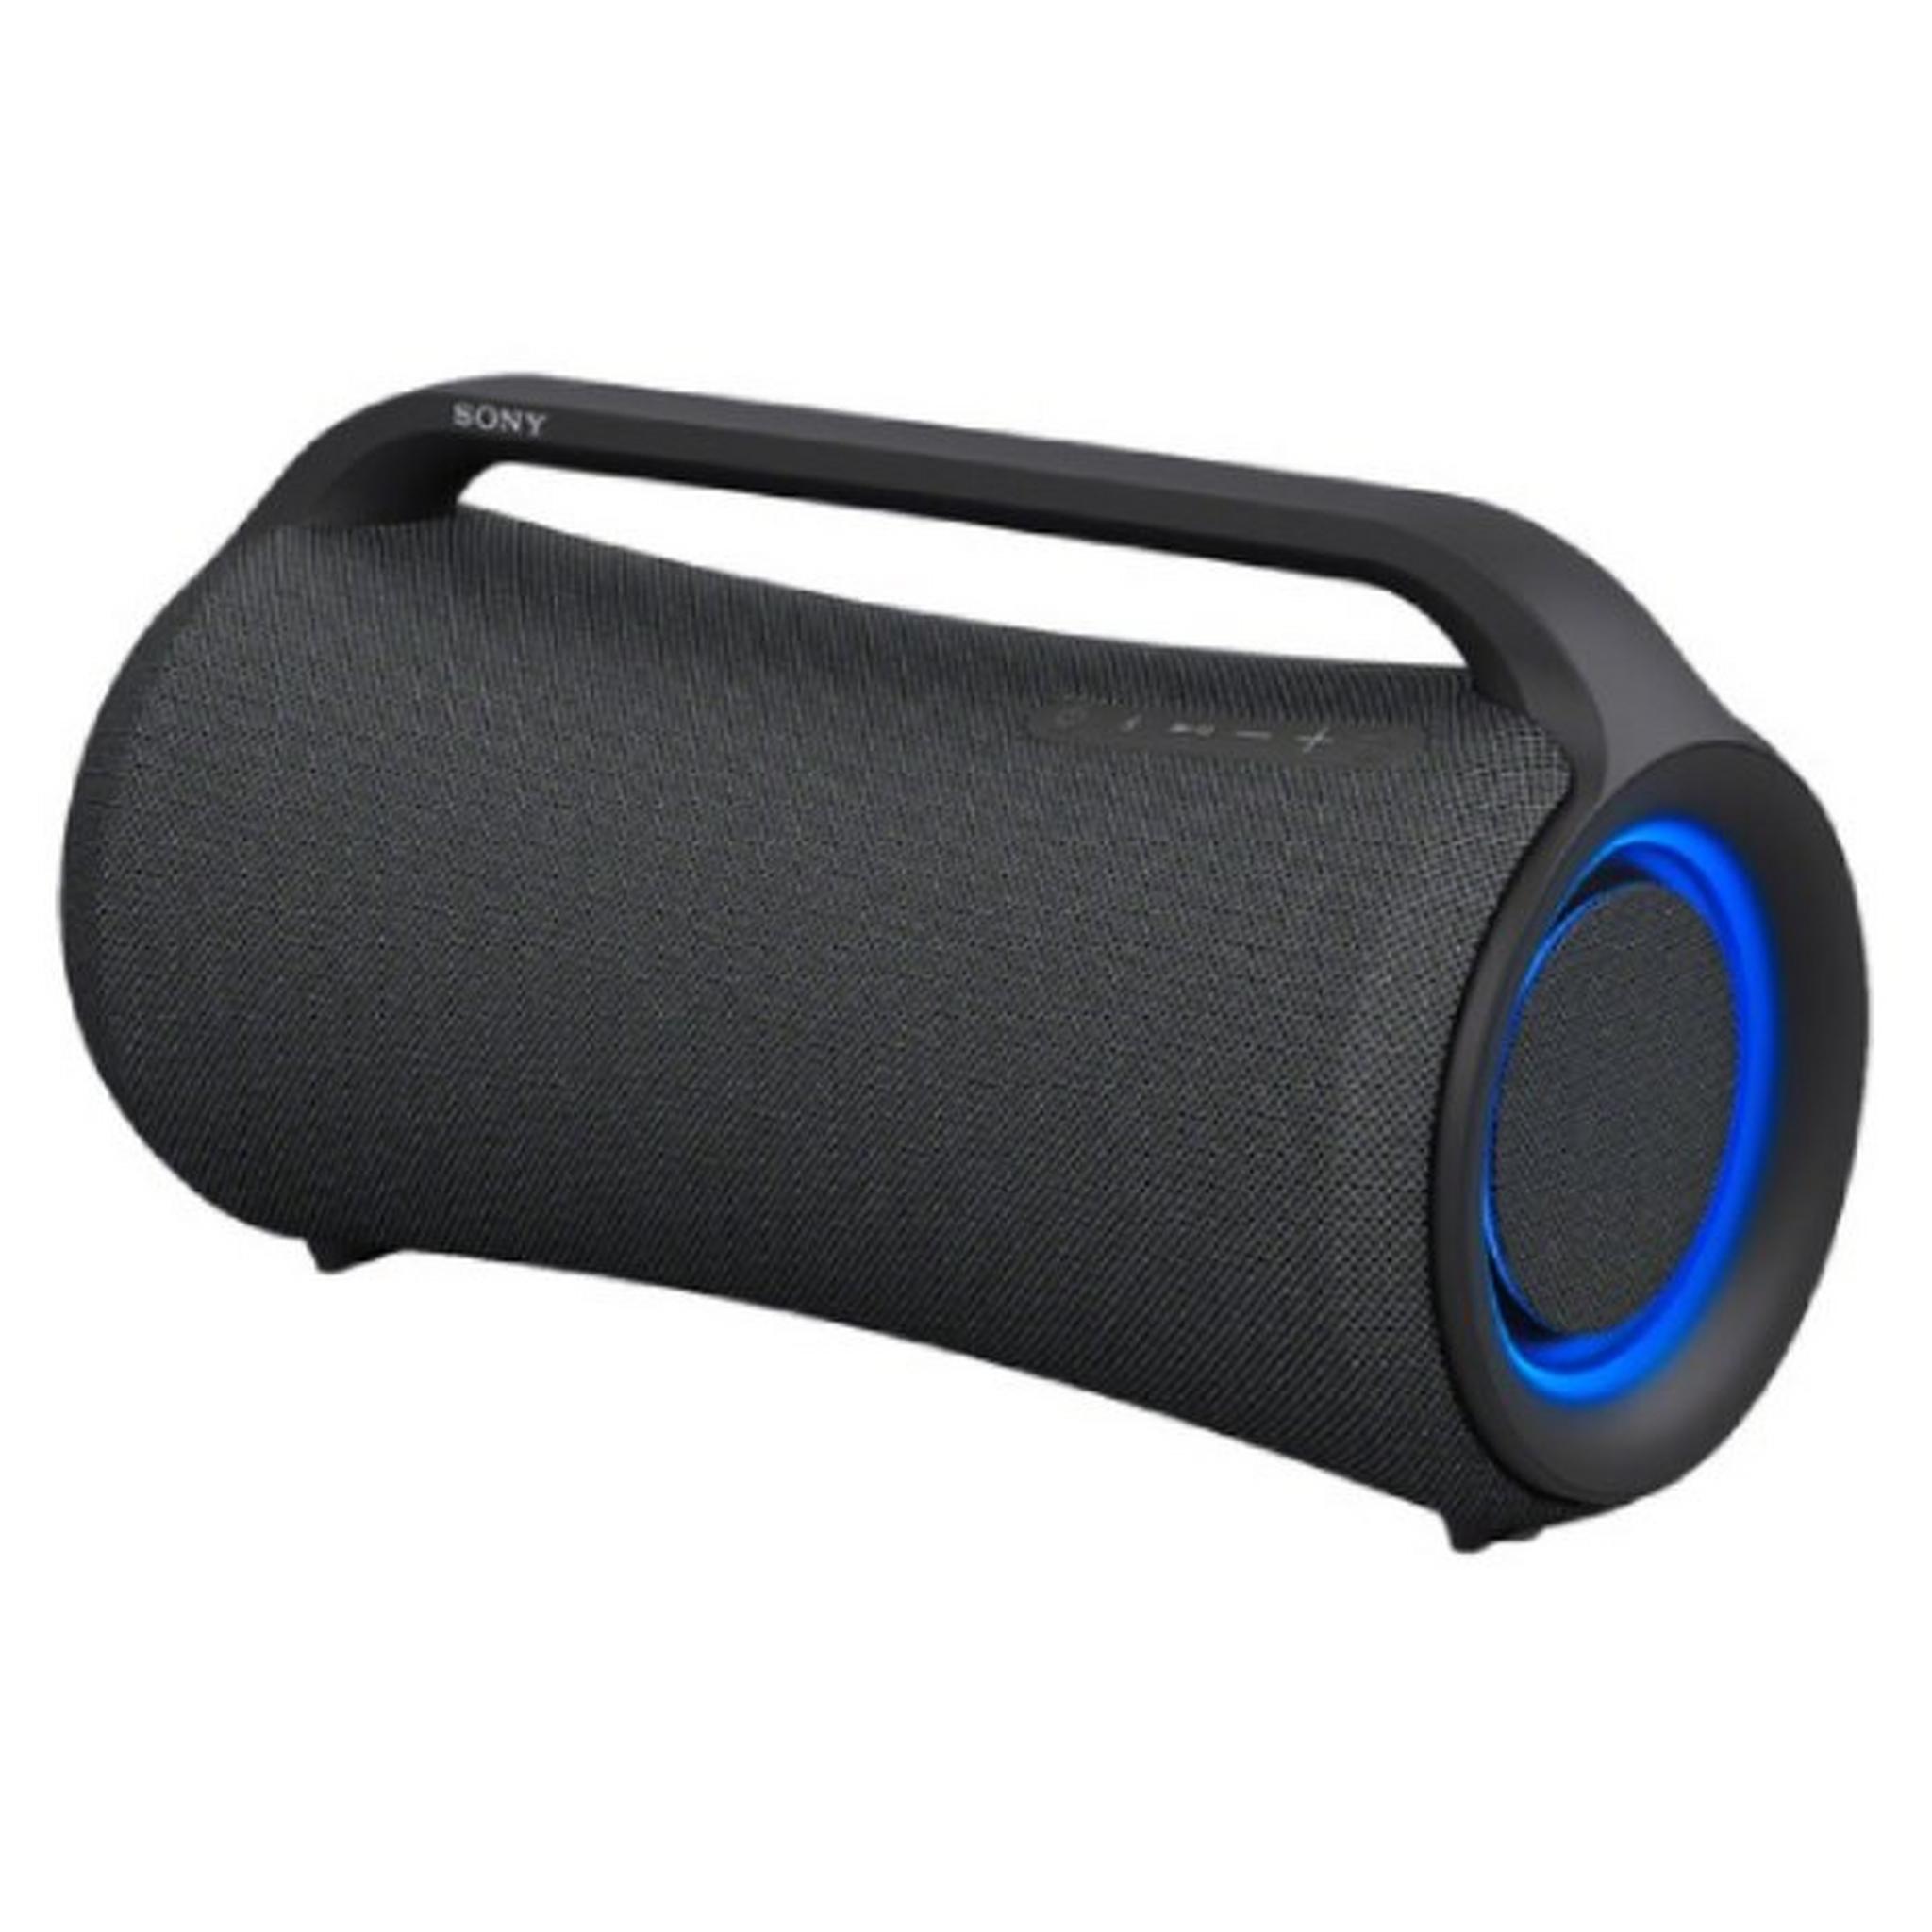 Sony XG500 X-Series Wireless Speaker